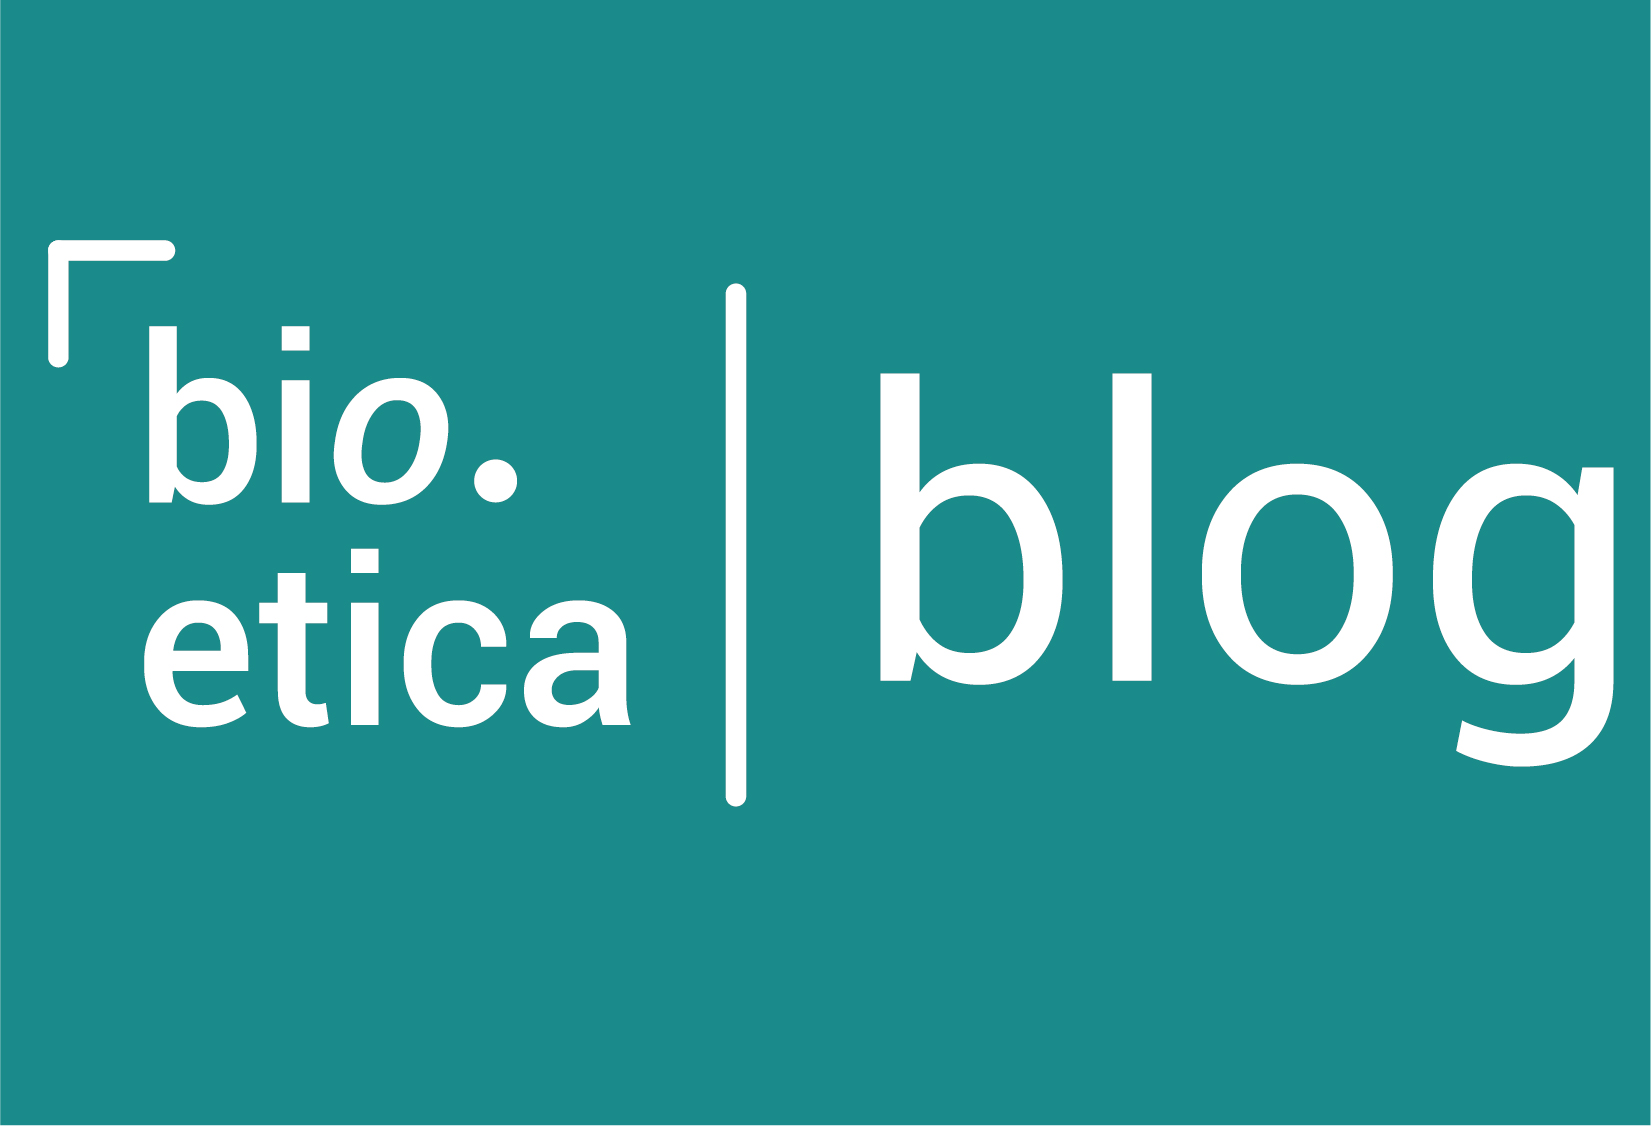 (c) Bioeticablog.com